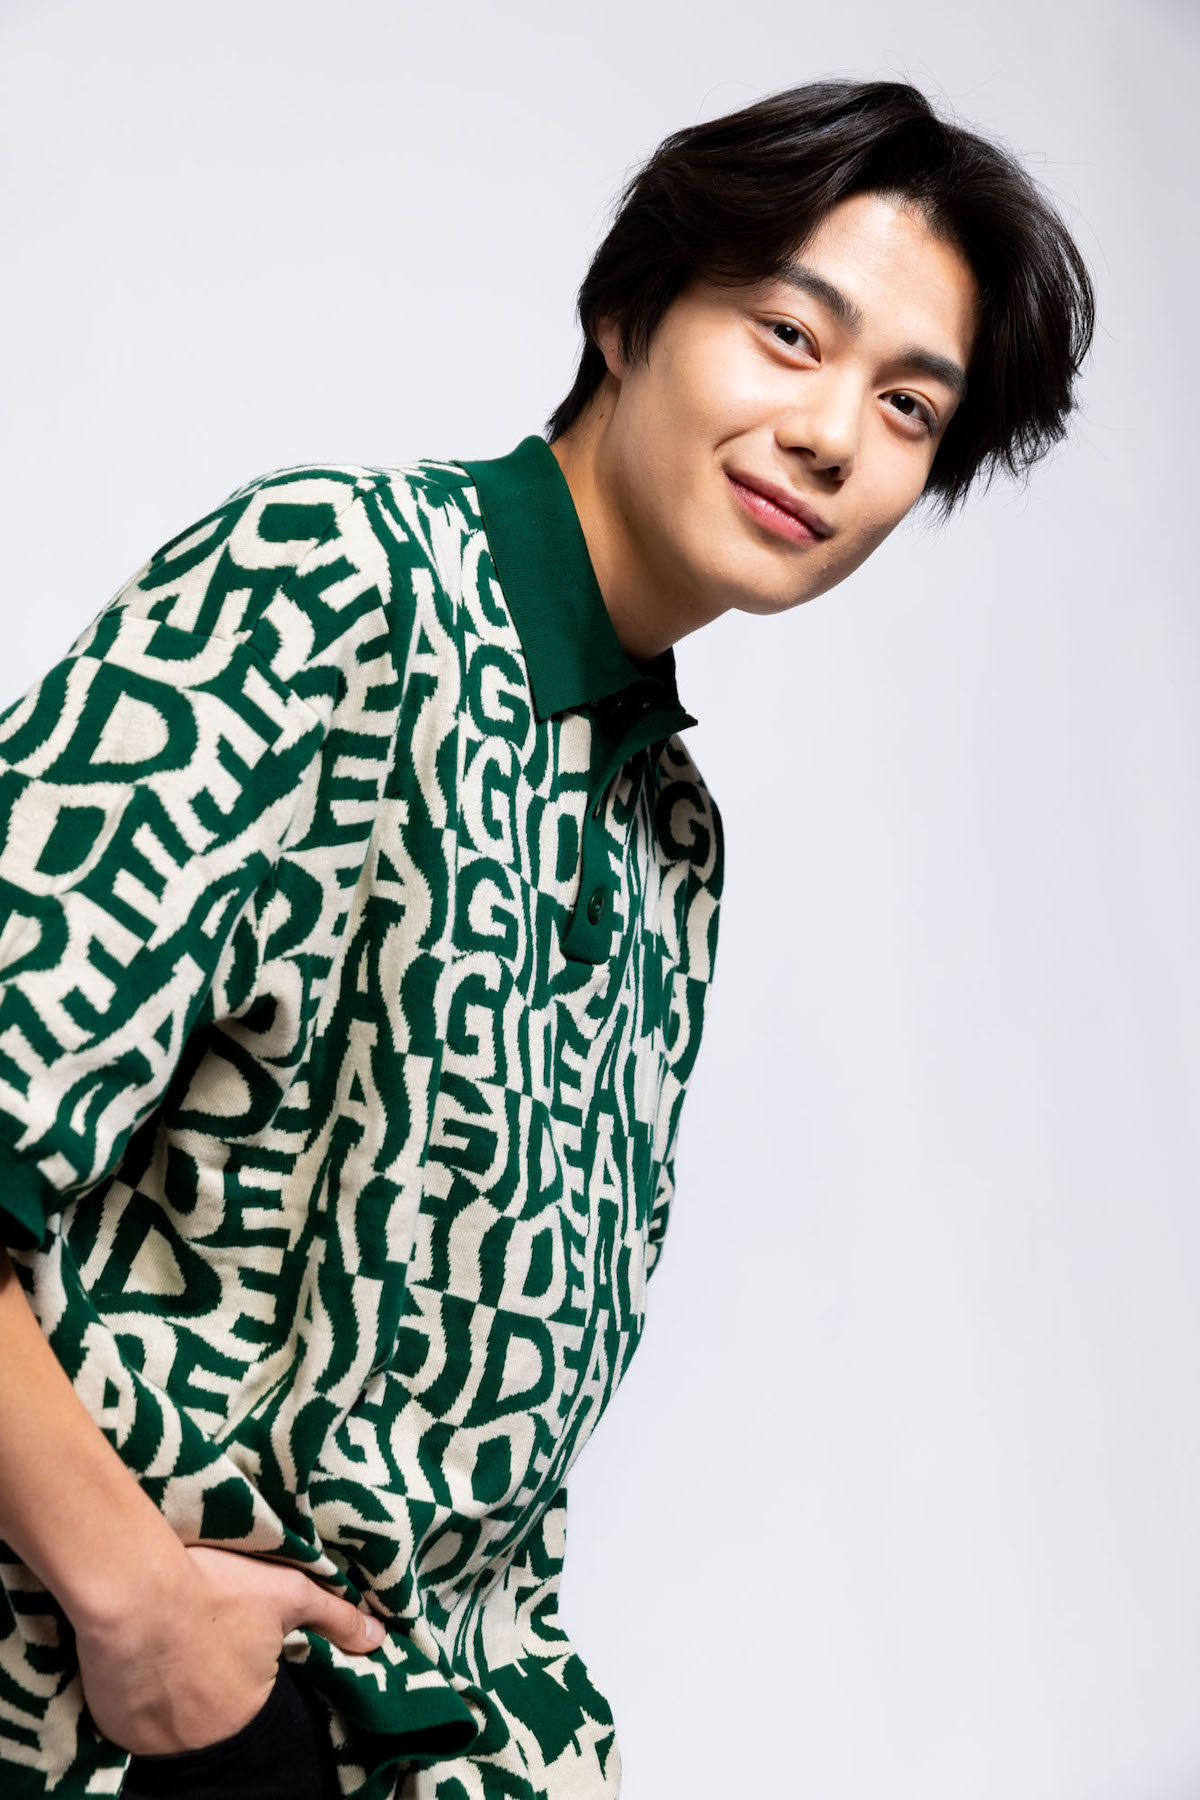 本気の恋をしたことがないので大丈夫かな」 17歳の俳優・今井竜太郎